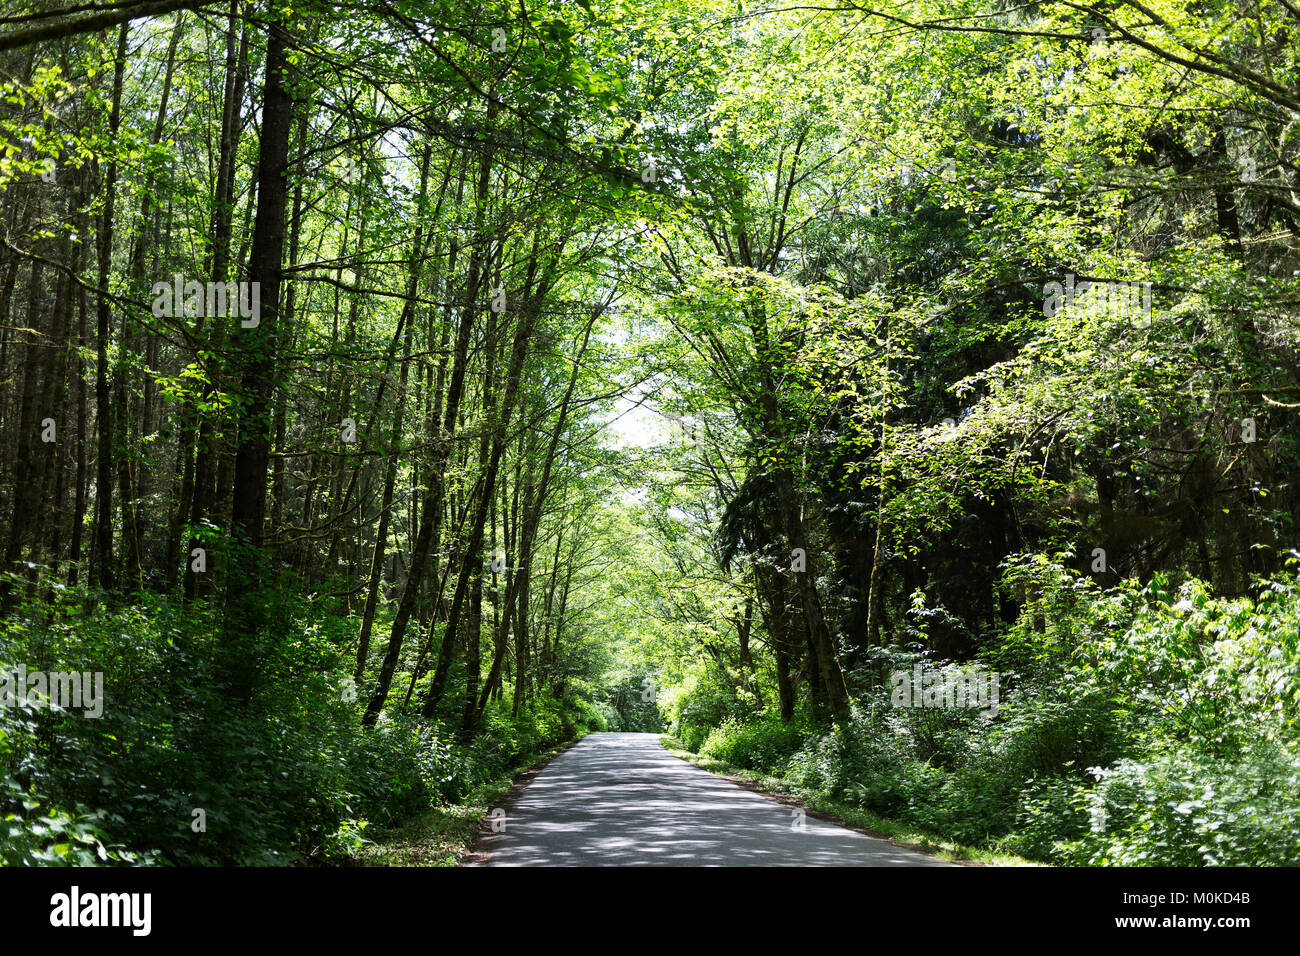 Eine Landstraße dappled mit Sonnenlicht in den Schatten und gesäumt von üppigen Bäumen in grünem Laub; Whidbey Island, Washington, Vereinigte Staaten von Amerika Stockfoto